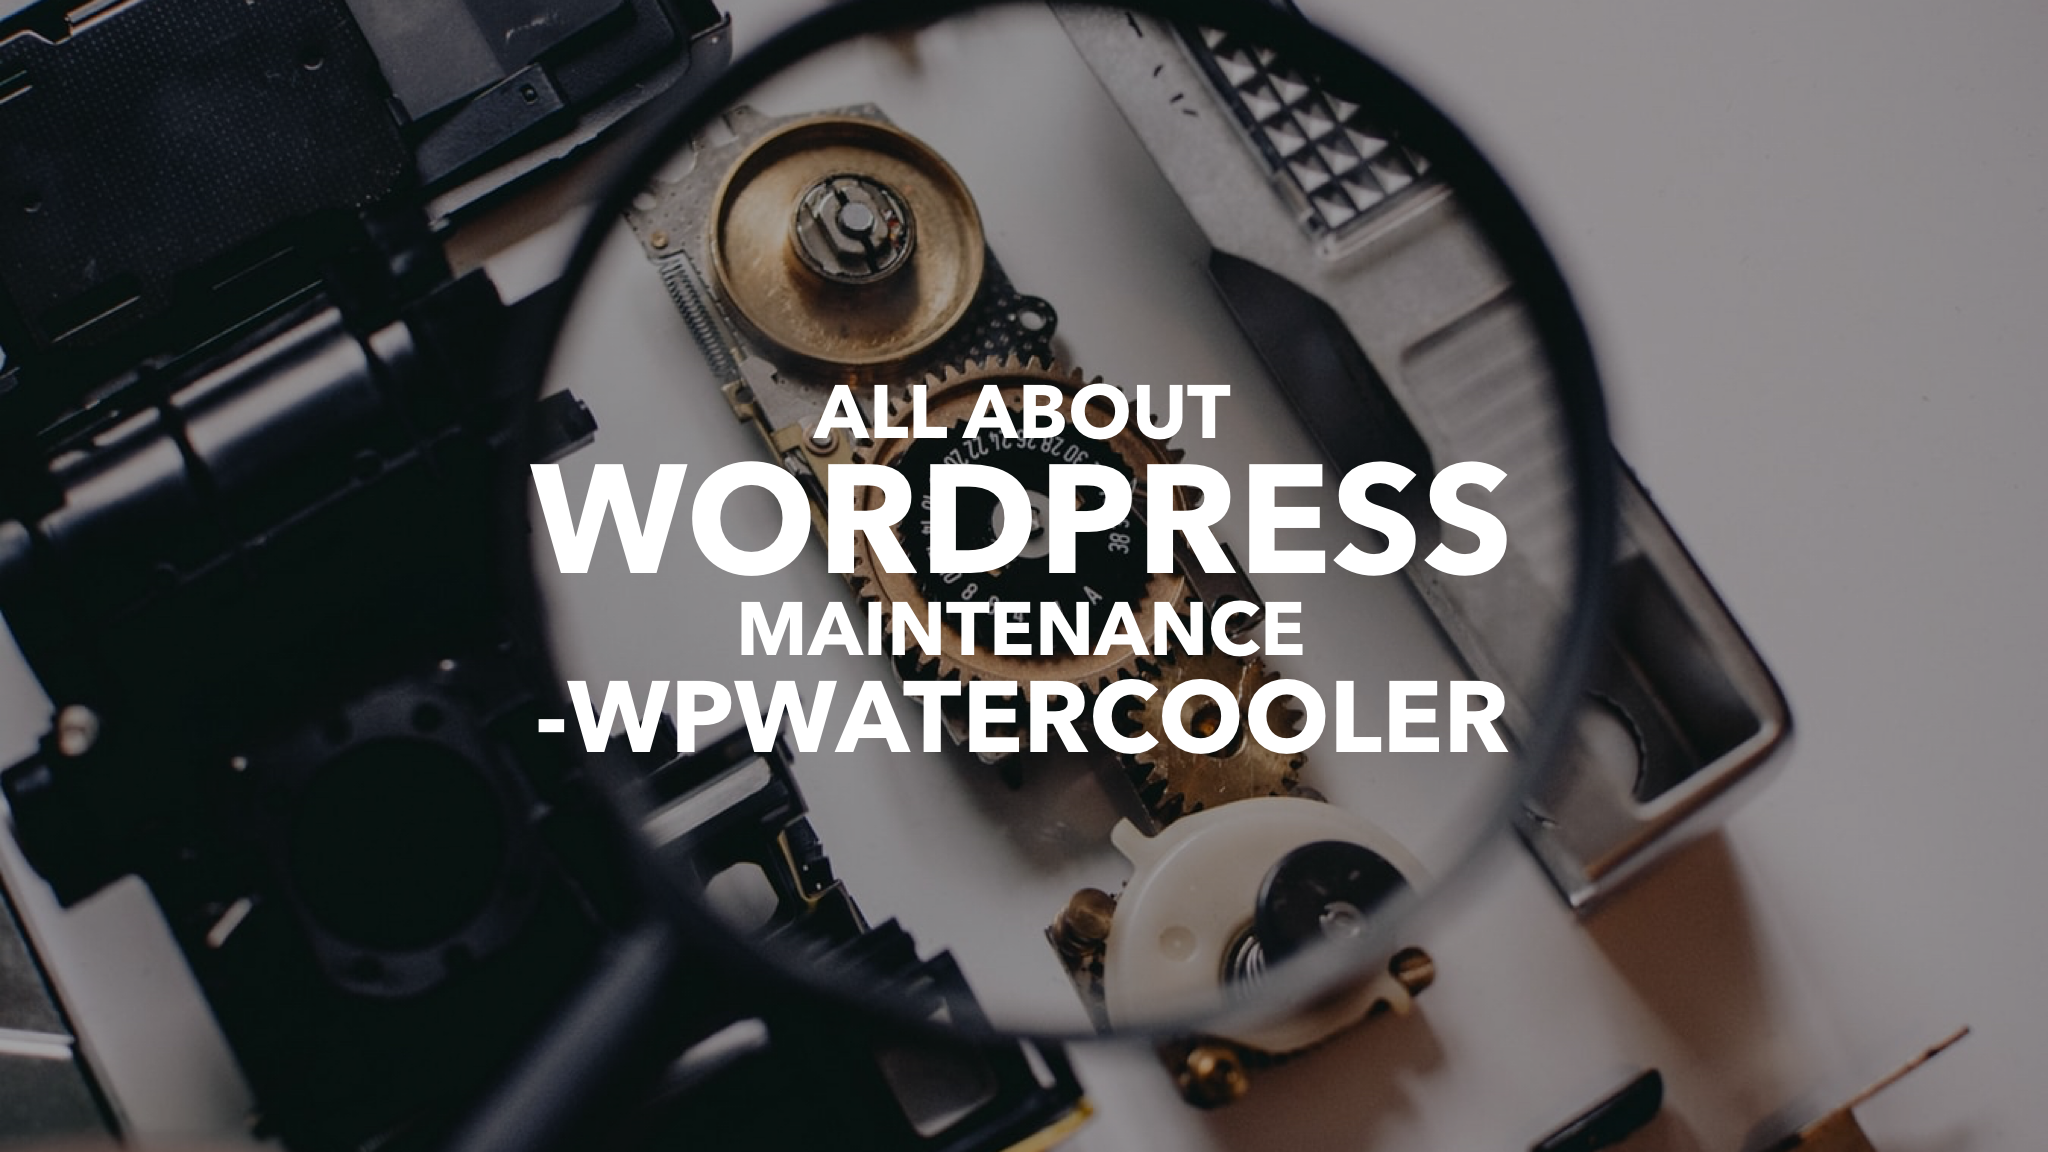 EP350 – All About WordPress Maintenance